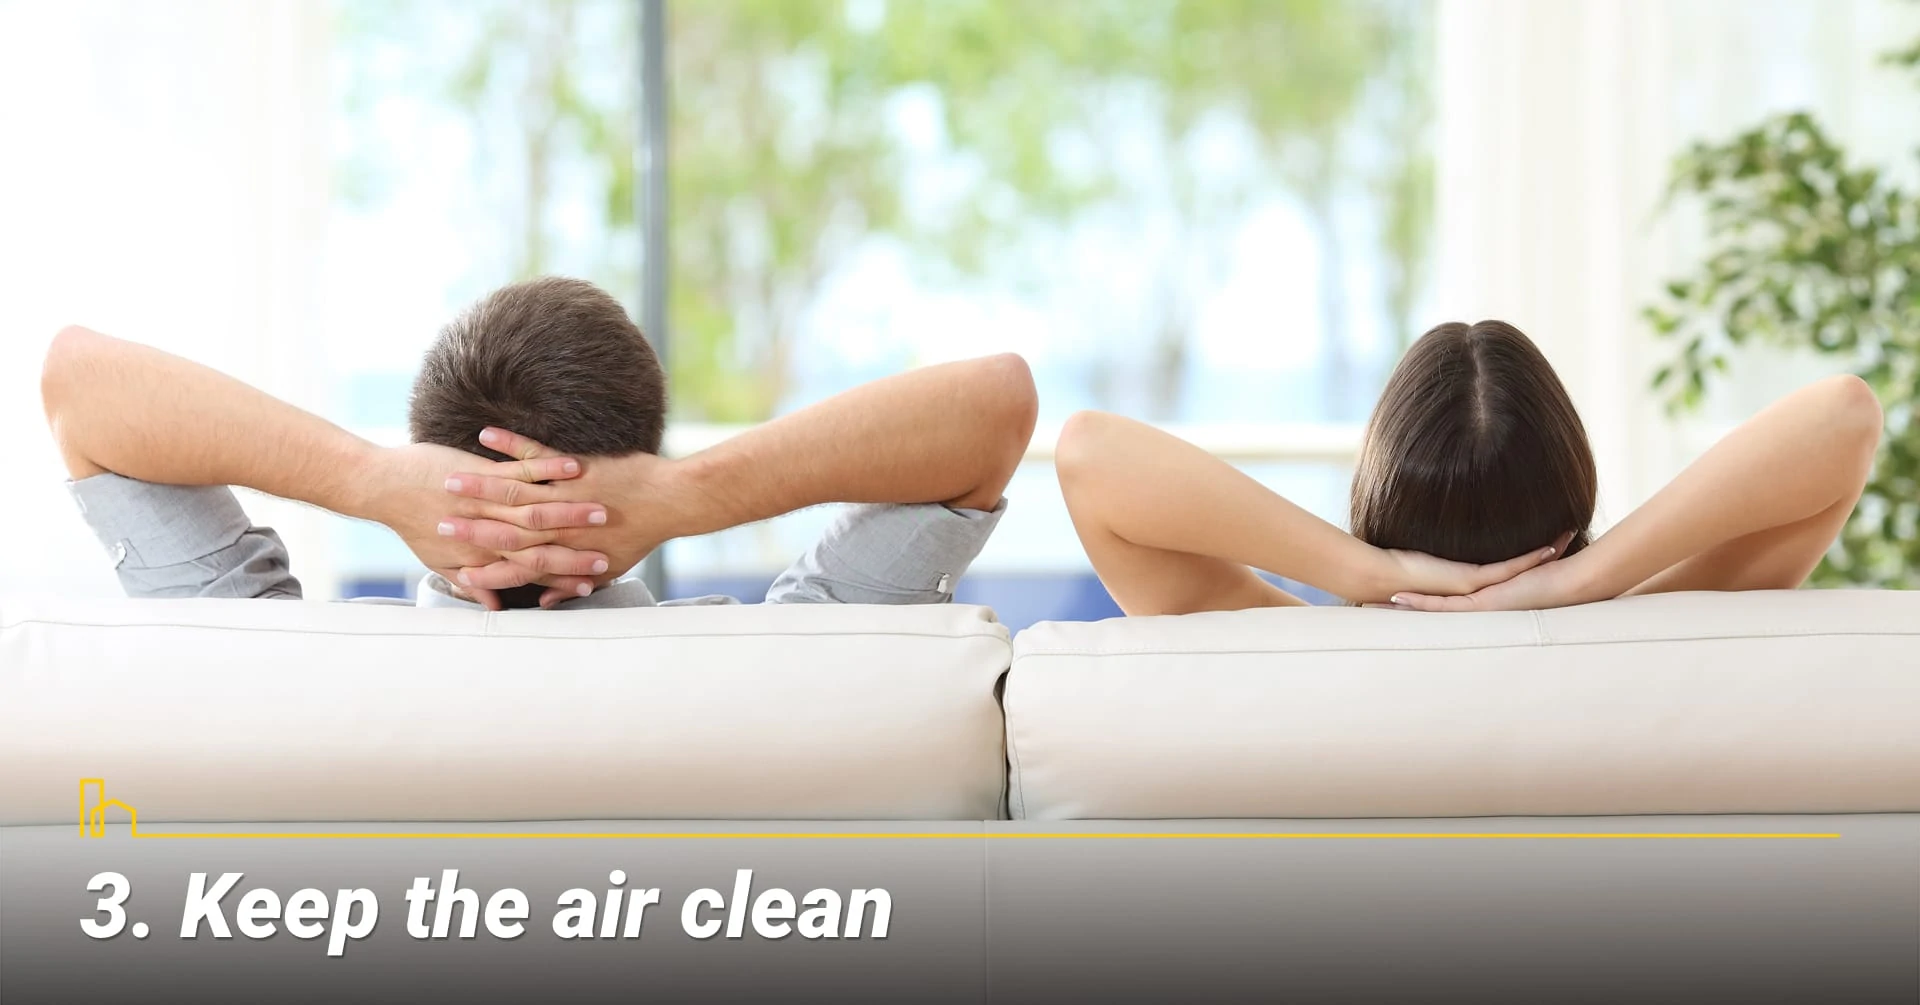 Keep the air clean, keep healthy air